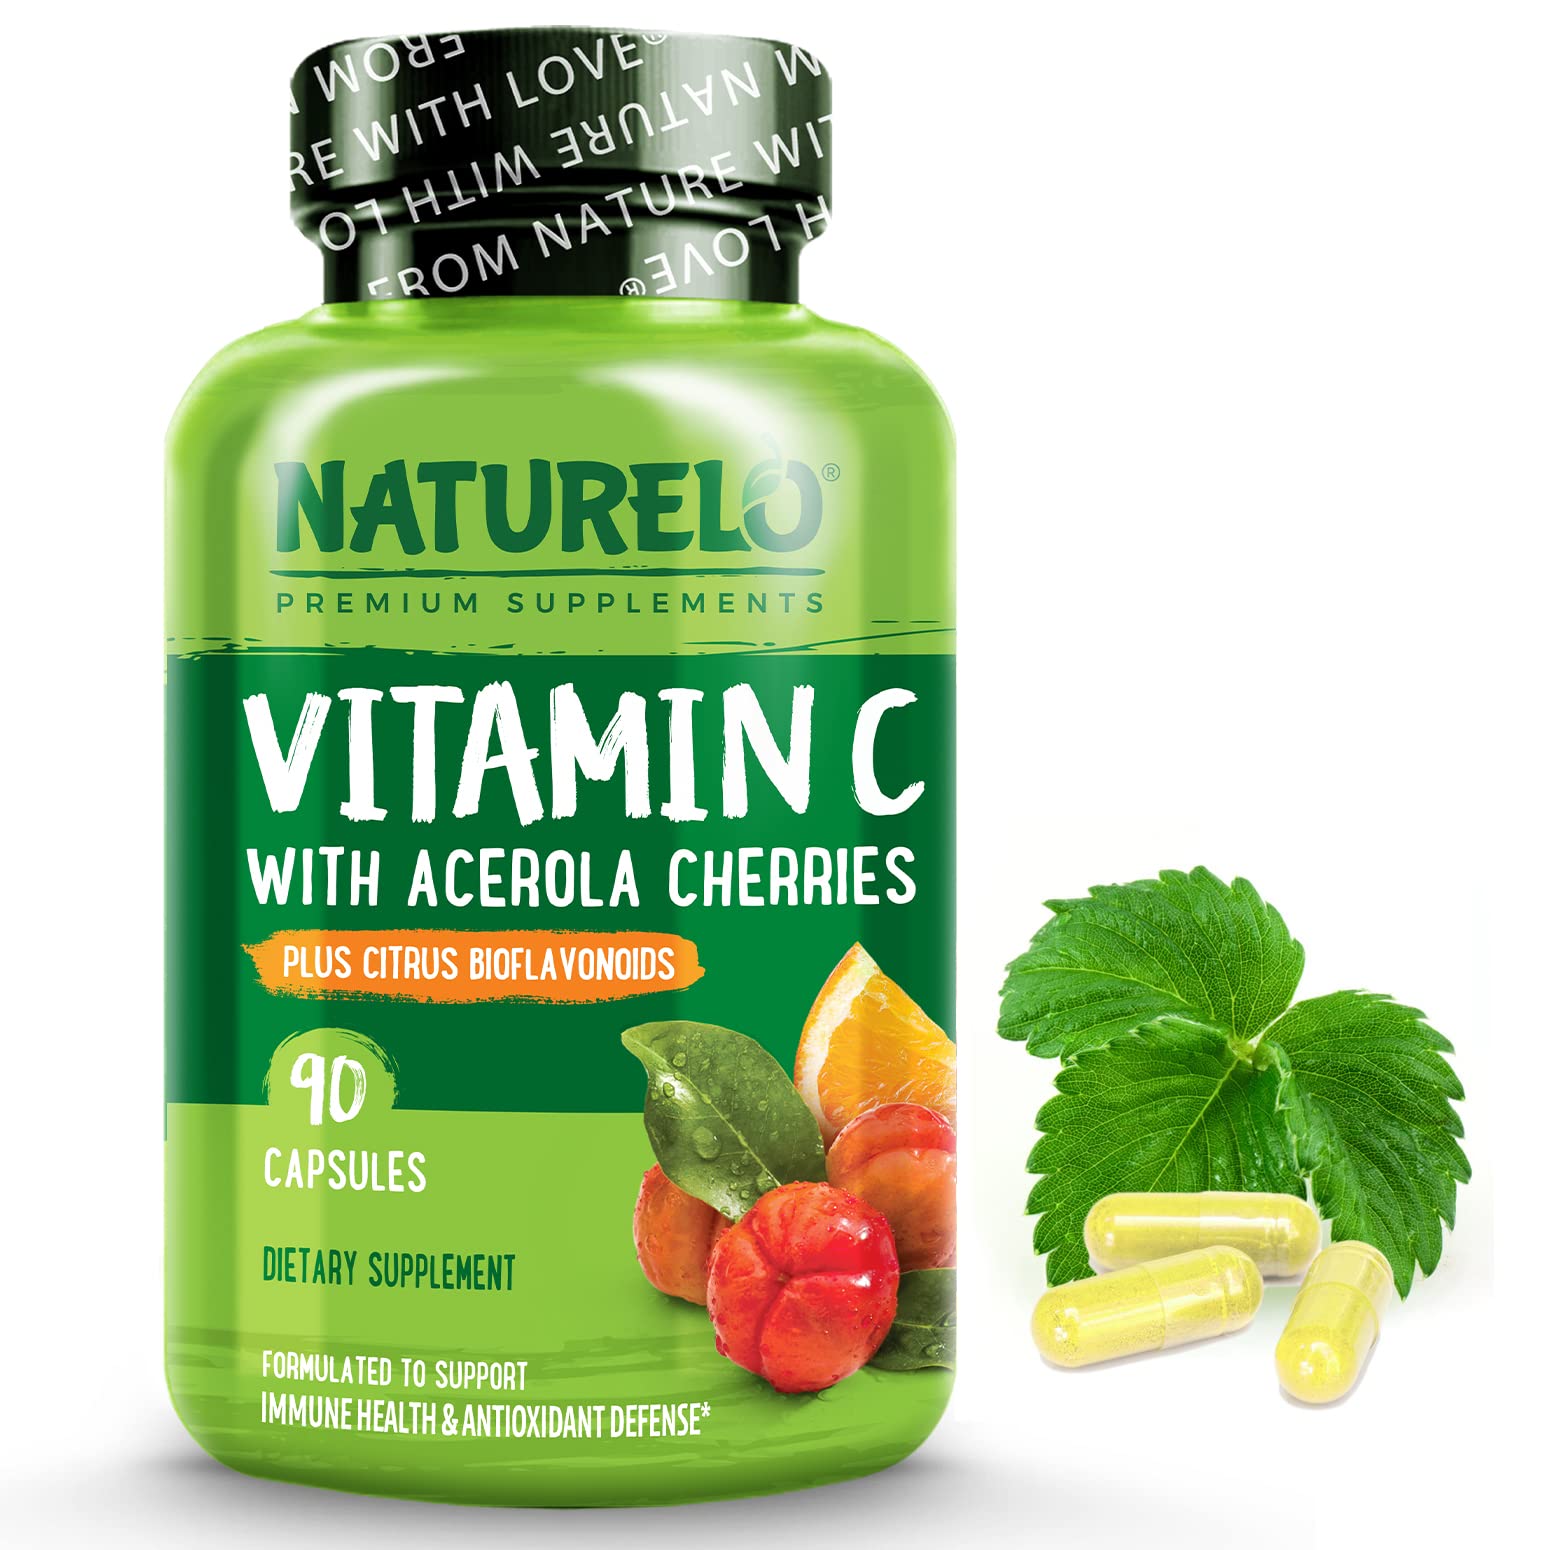 Book Cover NATURELO Vitamin C with Organic Acerola Cherry Extract and Citrus Bioflavonoids - Vegan Supplement - Immune Support - 500 mg VIT C per Cap - Non-GMO - 90 Capsules 90 Count (Pack of 1) Capsule